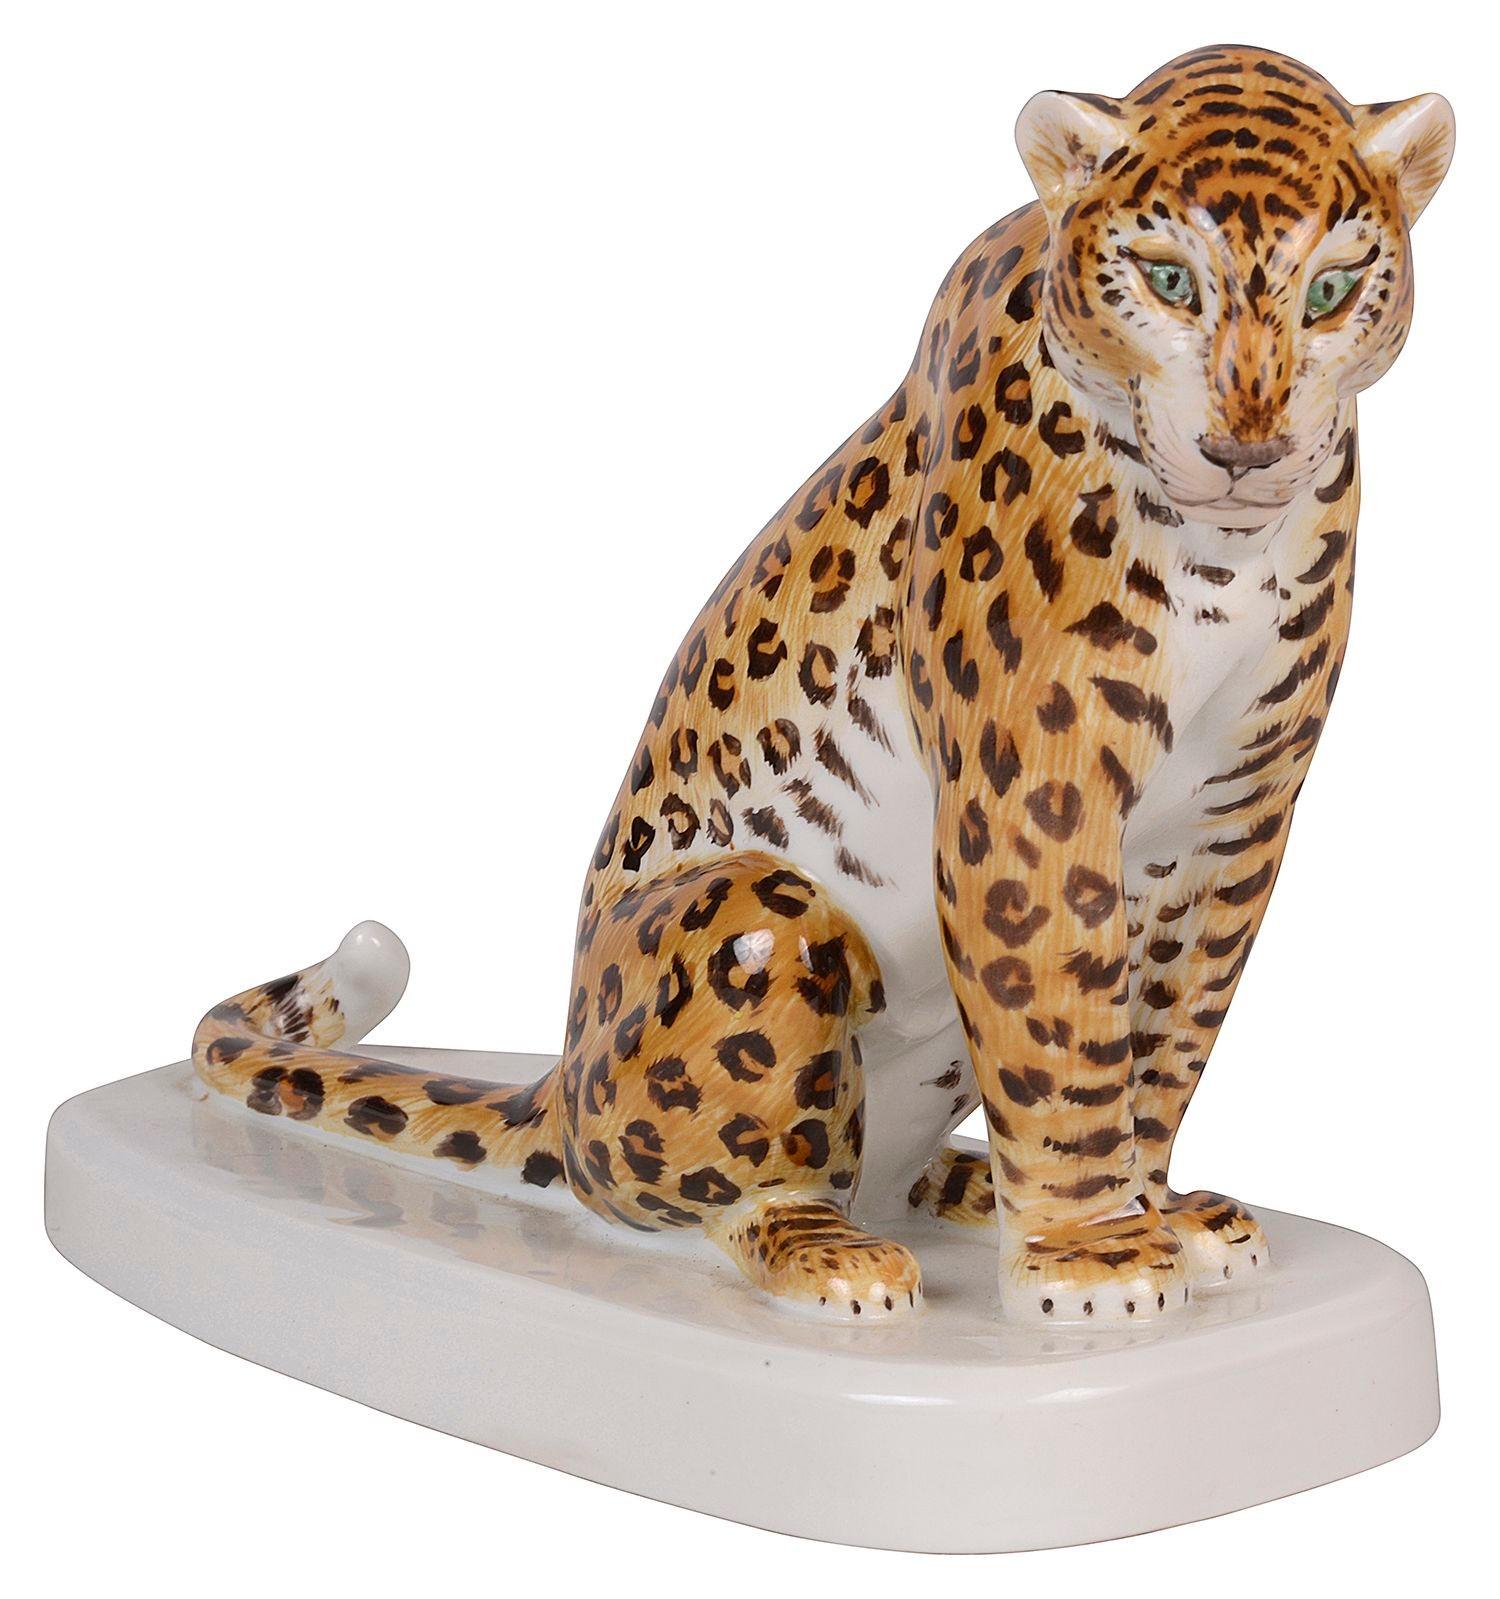 Un charmant modèle en porcelaine de Meissen d'un léopard assis sur une base blanche, signé avec les épées croisées bleu de Meissen à la base.

Lot 71 61587 DSKZN